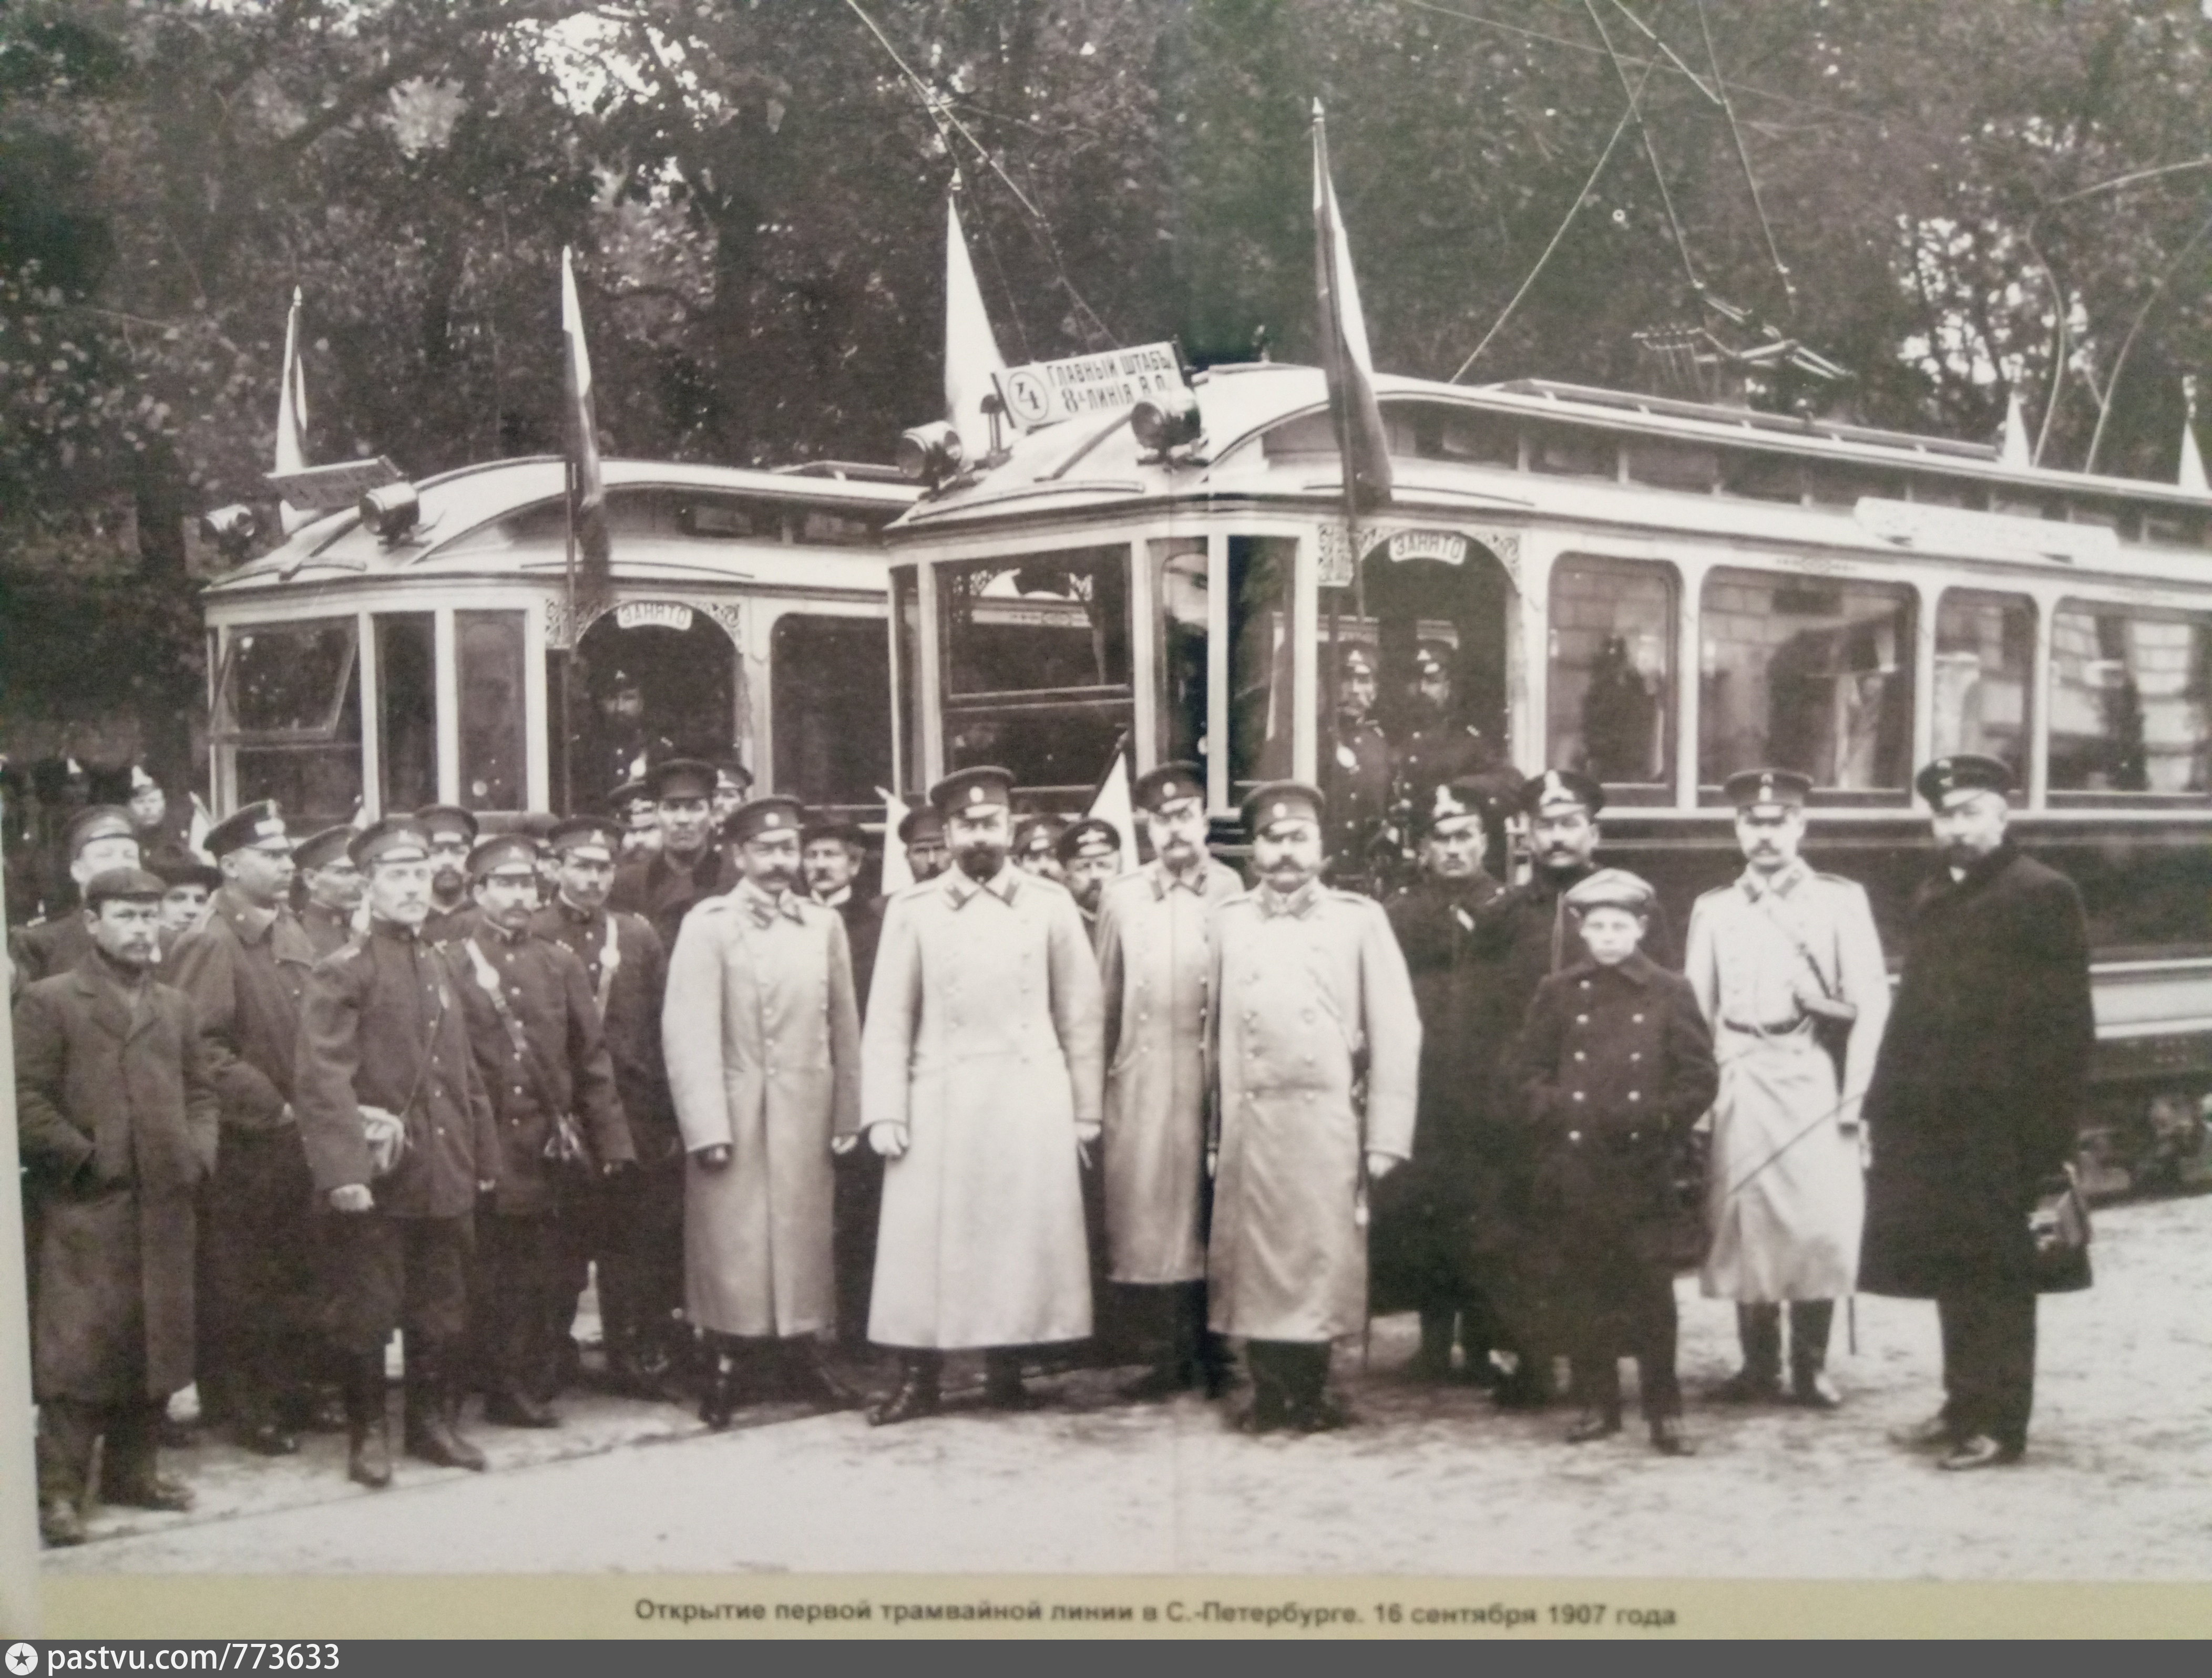 В первом трамвае было в 3 раза. 29 Сентября 1907 открытие трамвайного движения в Петербурге. Первый трамвай в Санкт-Петербурге 1907. Открытие трамвайного движения в Санкт-Петербурге в 1907 году. Трамваи 1907 год Петербург.